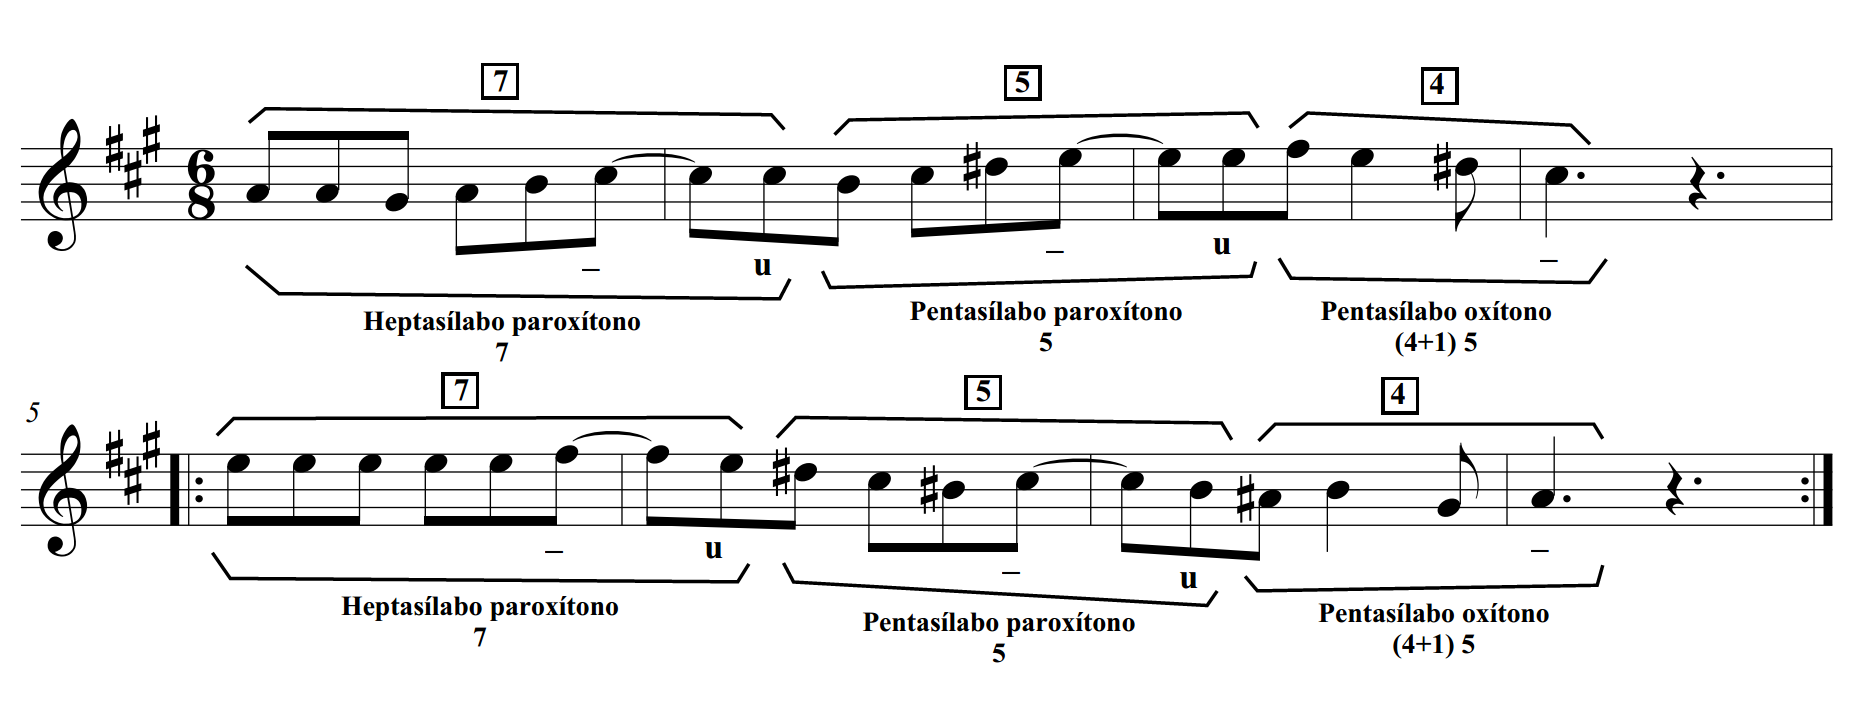 Transcripción de
melodía de cueca o zamba D. 266